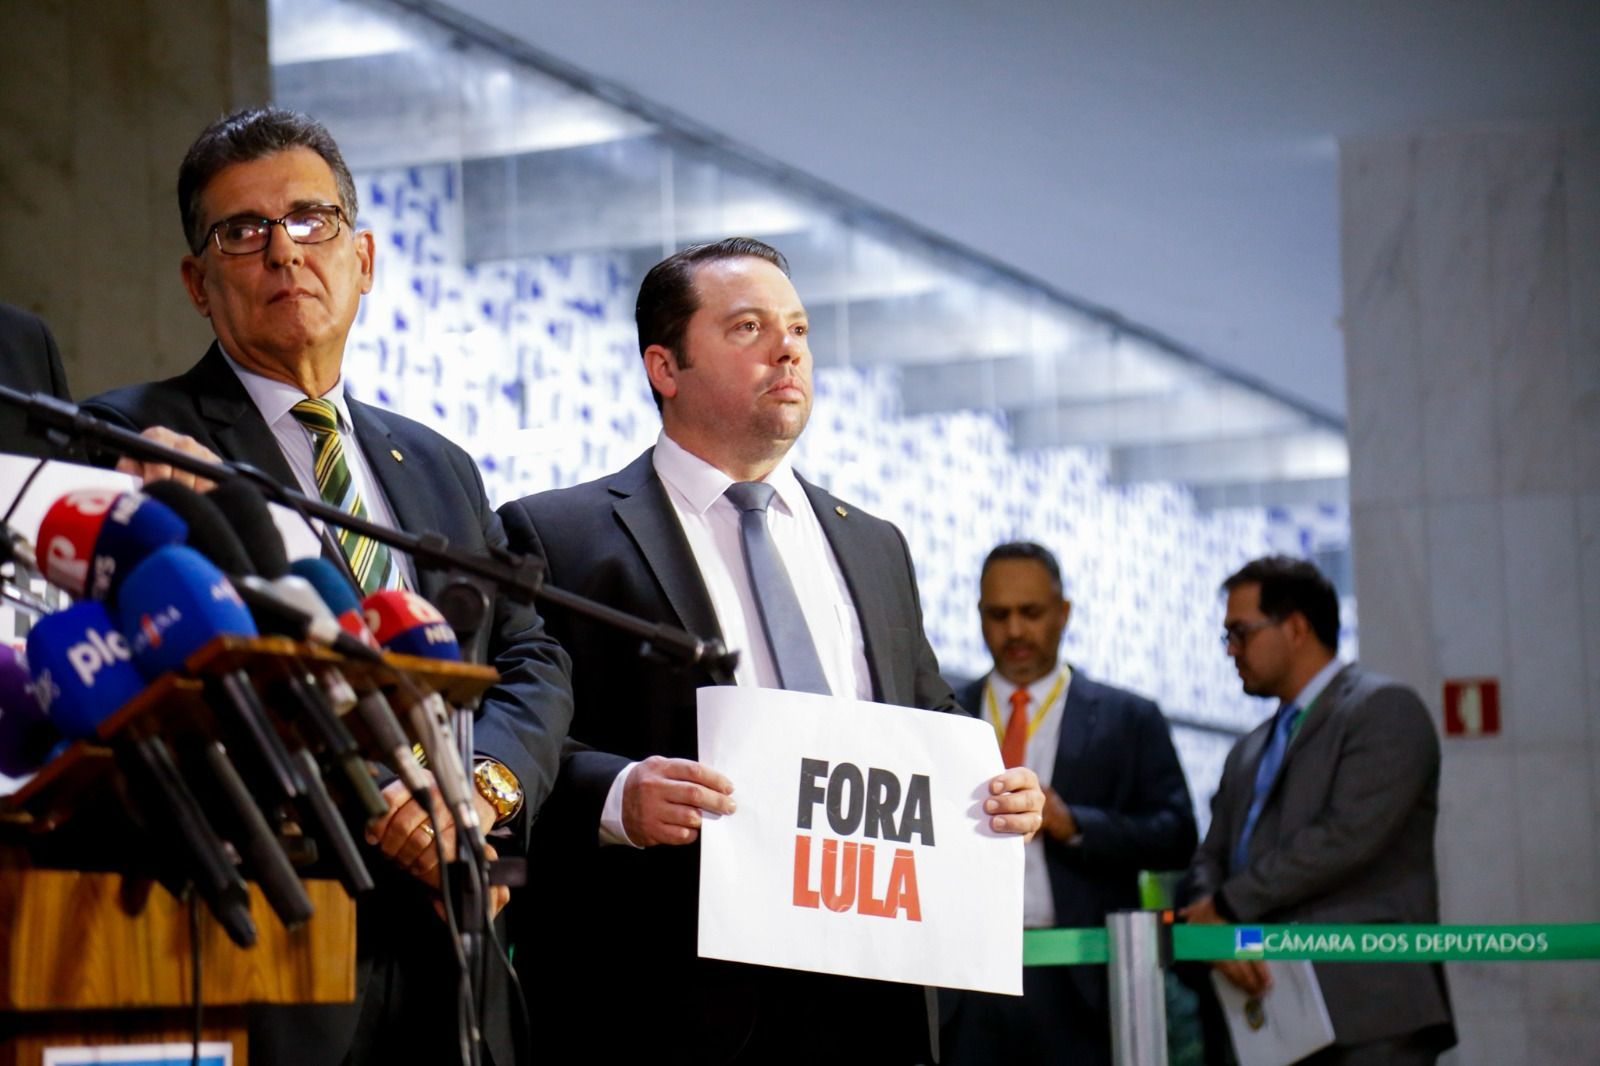 Após assinar pedido de impeachment, deputado apresenta denúncia contra Lula no Tribunal de Haia